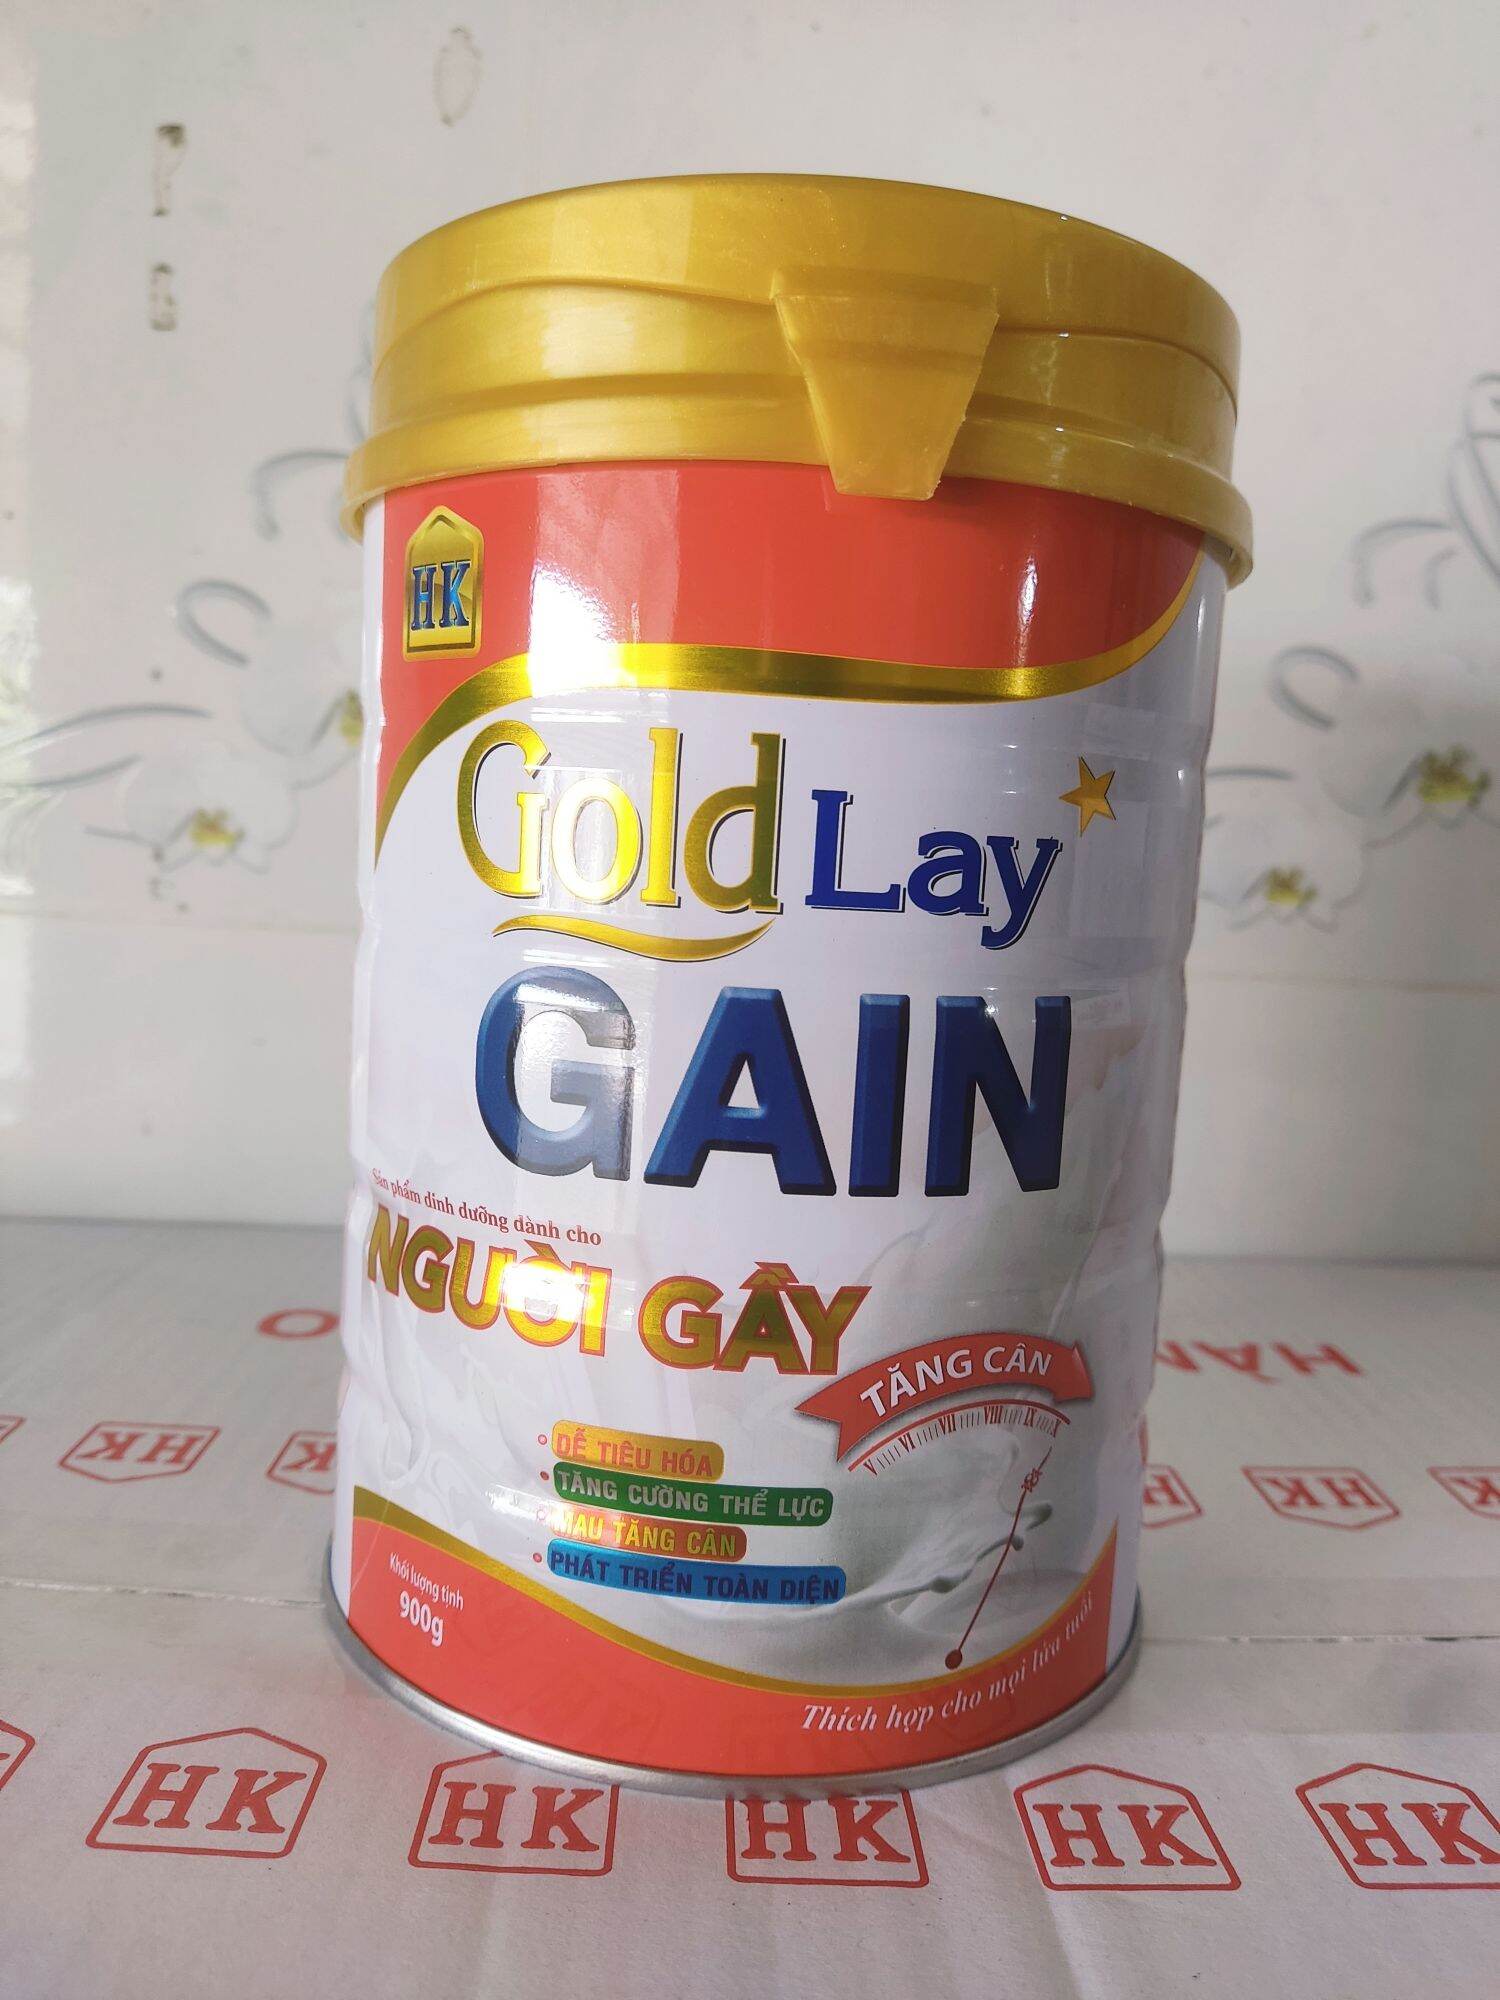 Sữa bột dinh dưỡng tăng cân cho người gầy Goldlay Gain lon 900g